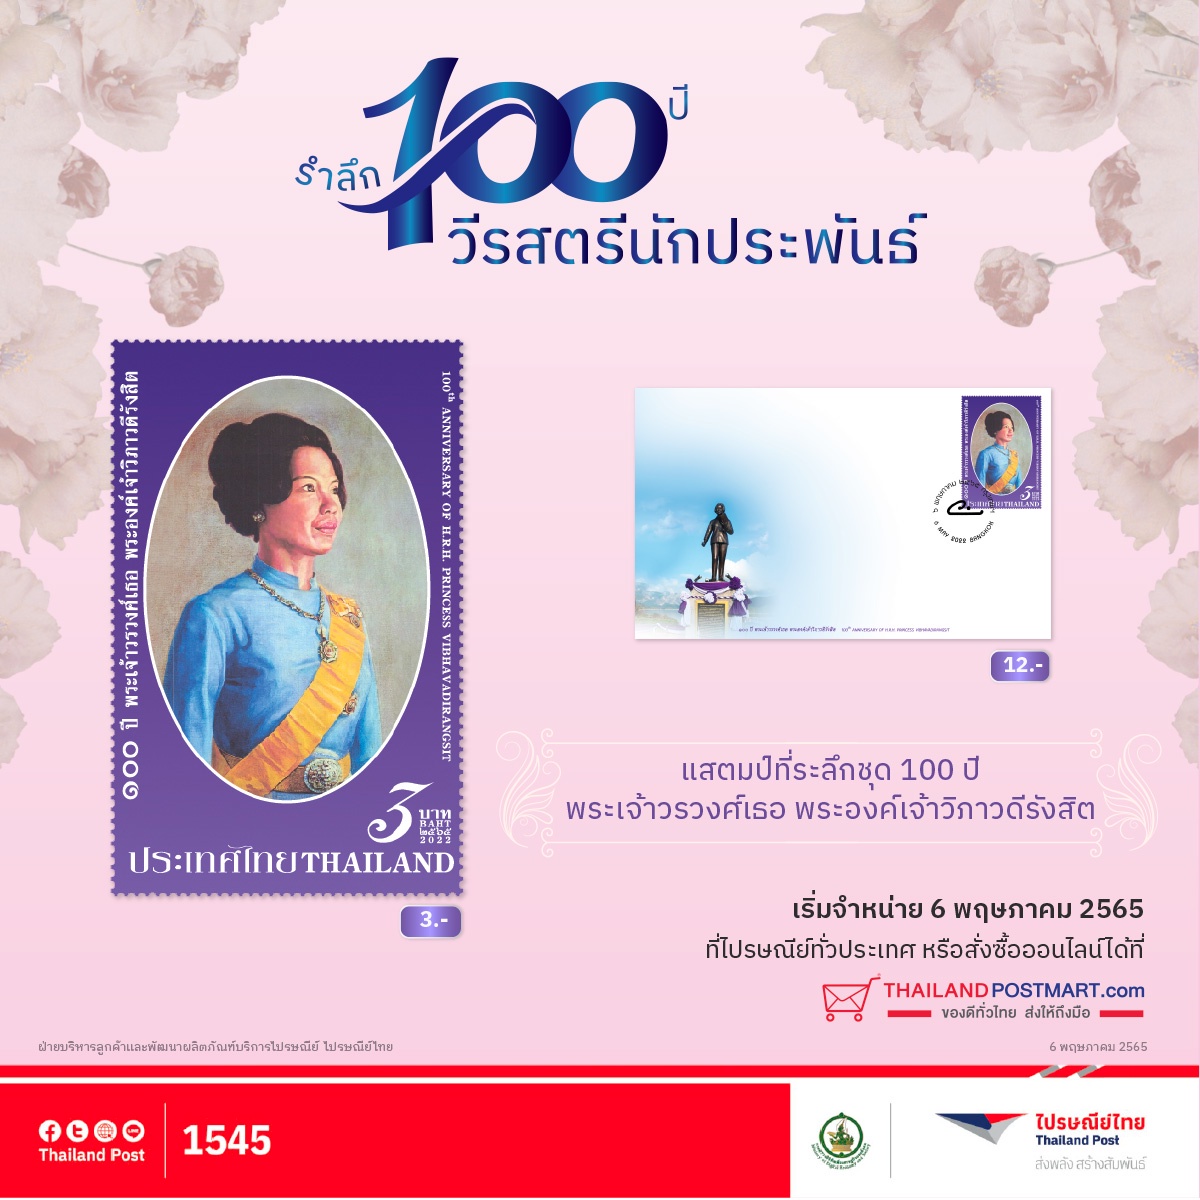 ไปรษณีย์ไทย เปิดตัวแสตมป์รำลึก 100 ปี วีรสตรีนักประพันธ์ พระเจ้าวรวงศ์เธอ พระองค์เจ้าวิภาวดีรังสิต